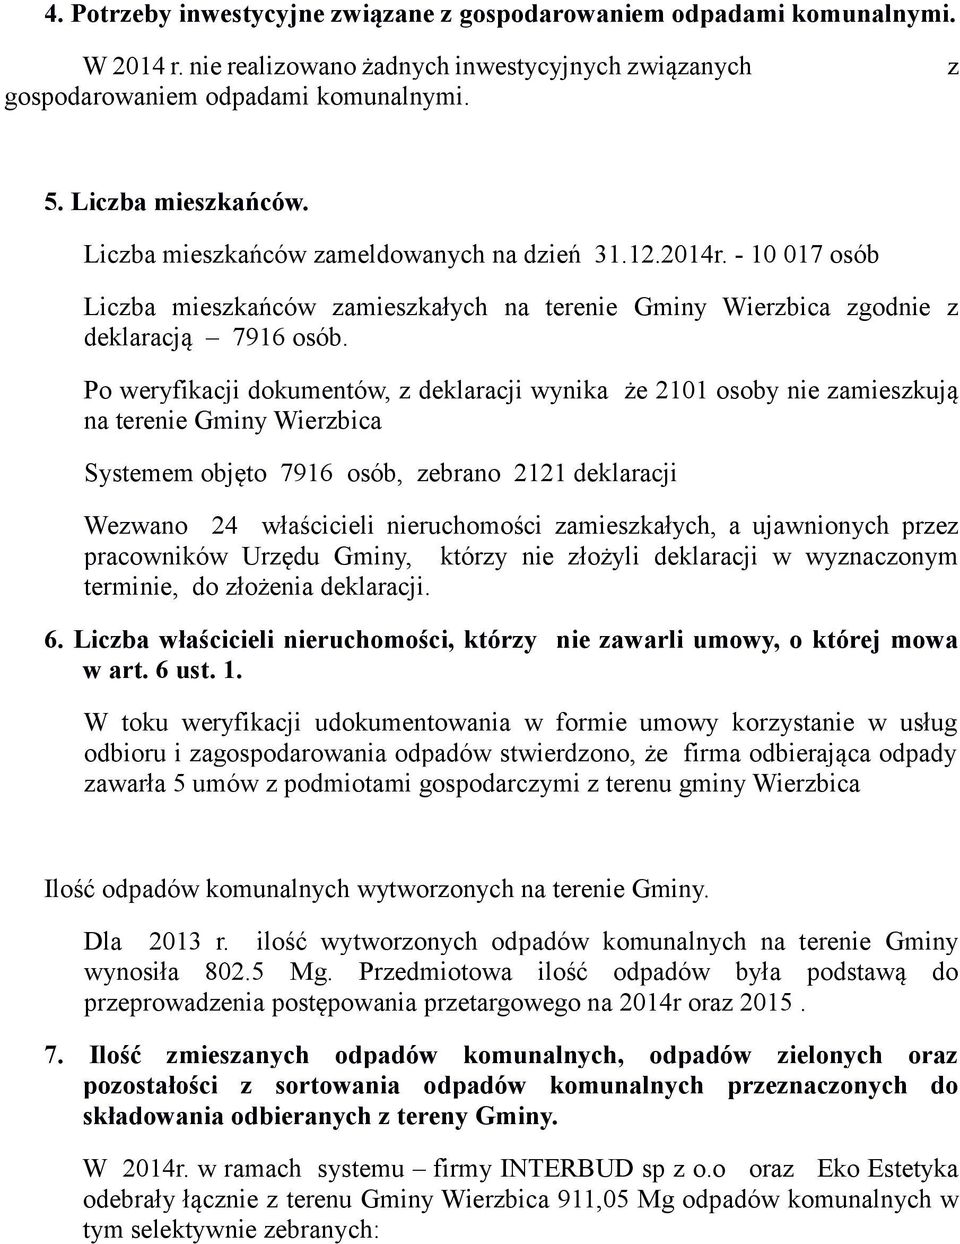 Po weryfikacji dokumentów, z deklaracji wynika że 2101 osoby nie zamieszkują na terenie Gminy Wierzbica Systemem objęto 7916 osób, zebrano 2121 deklaracji Wezwano 24 właścicieli nieruchomości